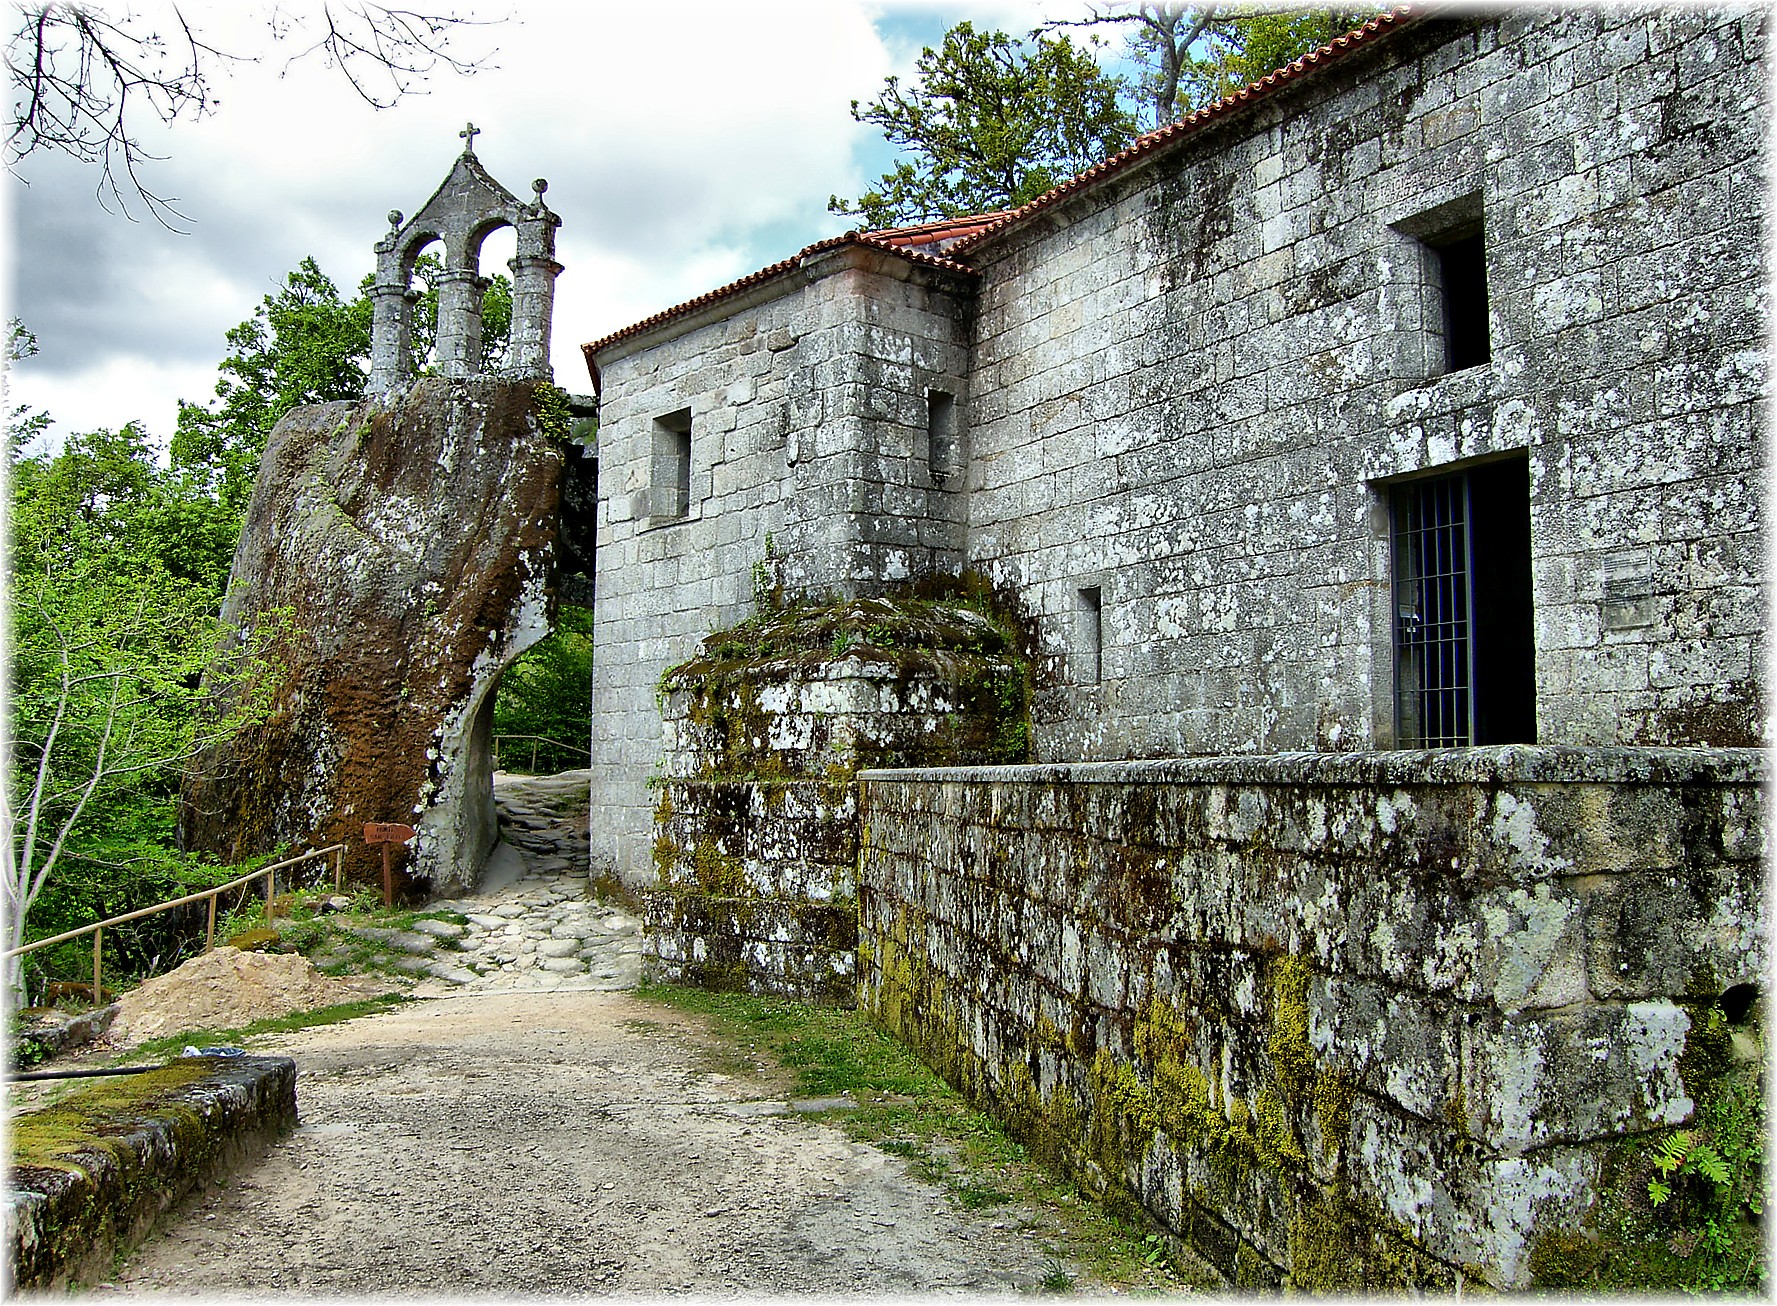 Monasterio de San Pedro de Rocas - Wikipedia, la enciclopedia libre